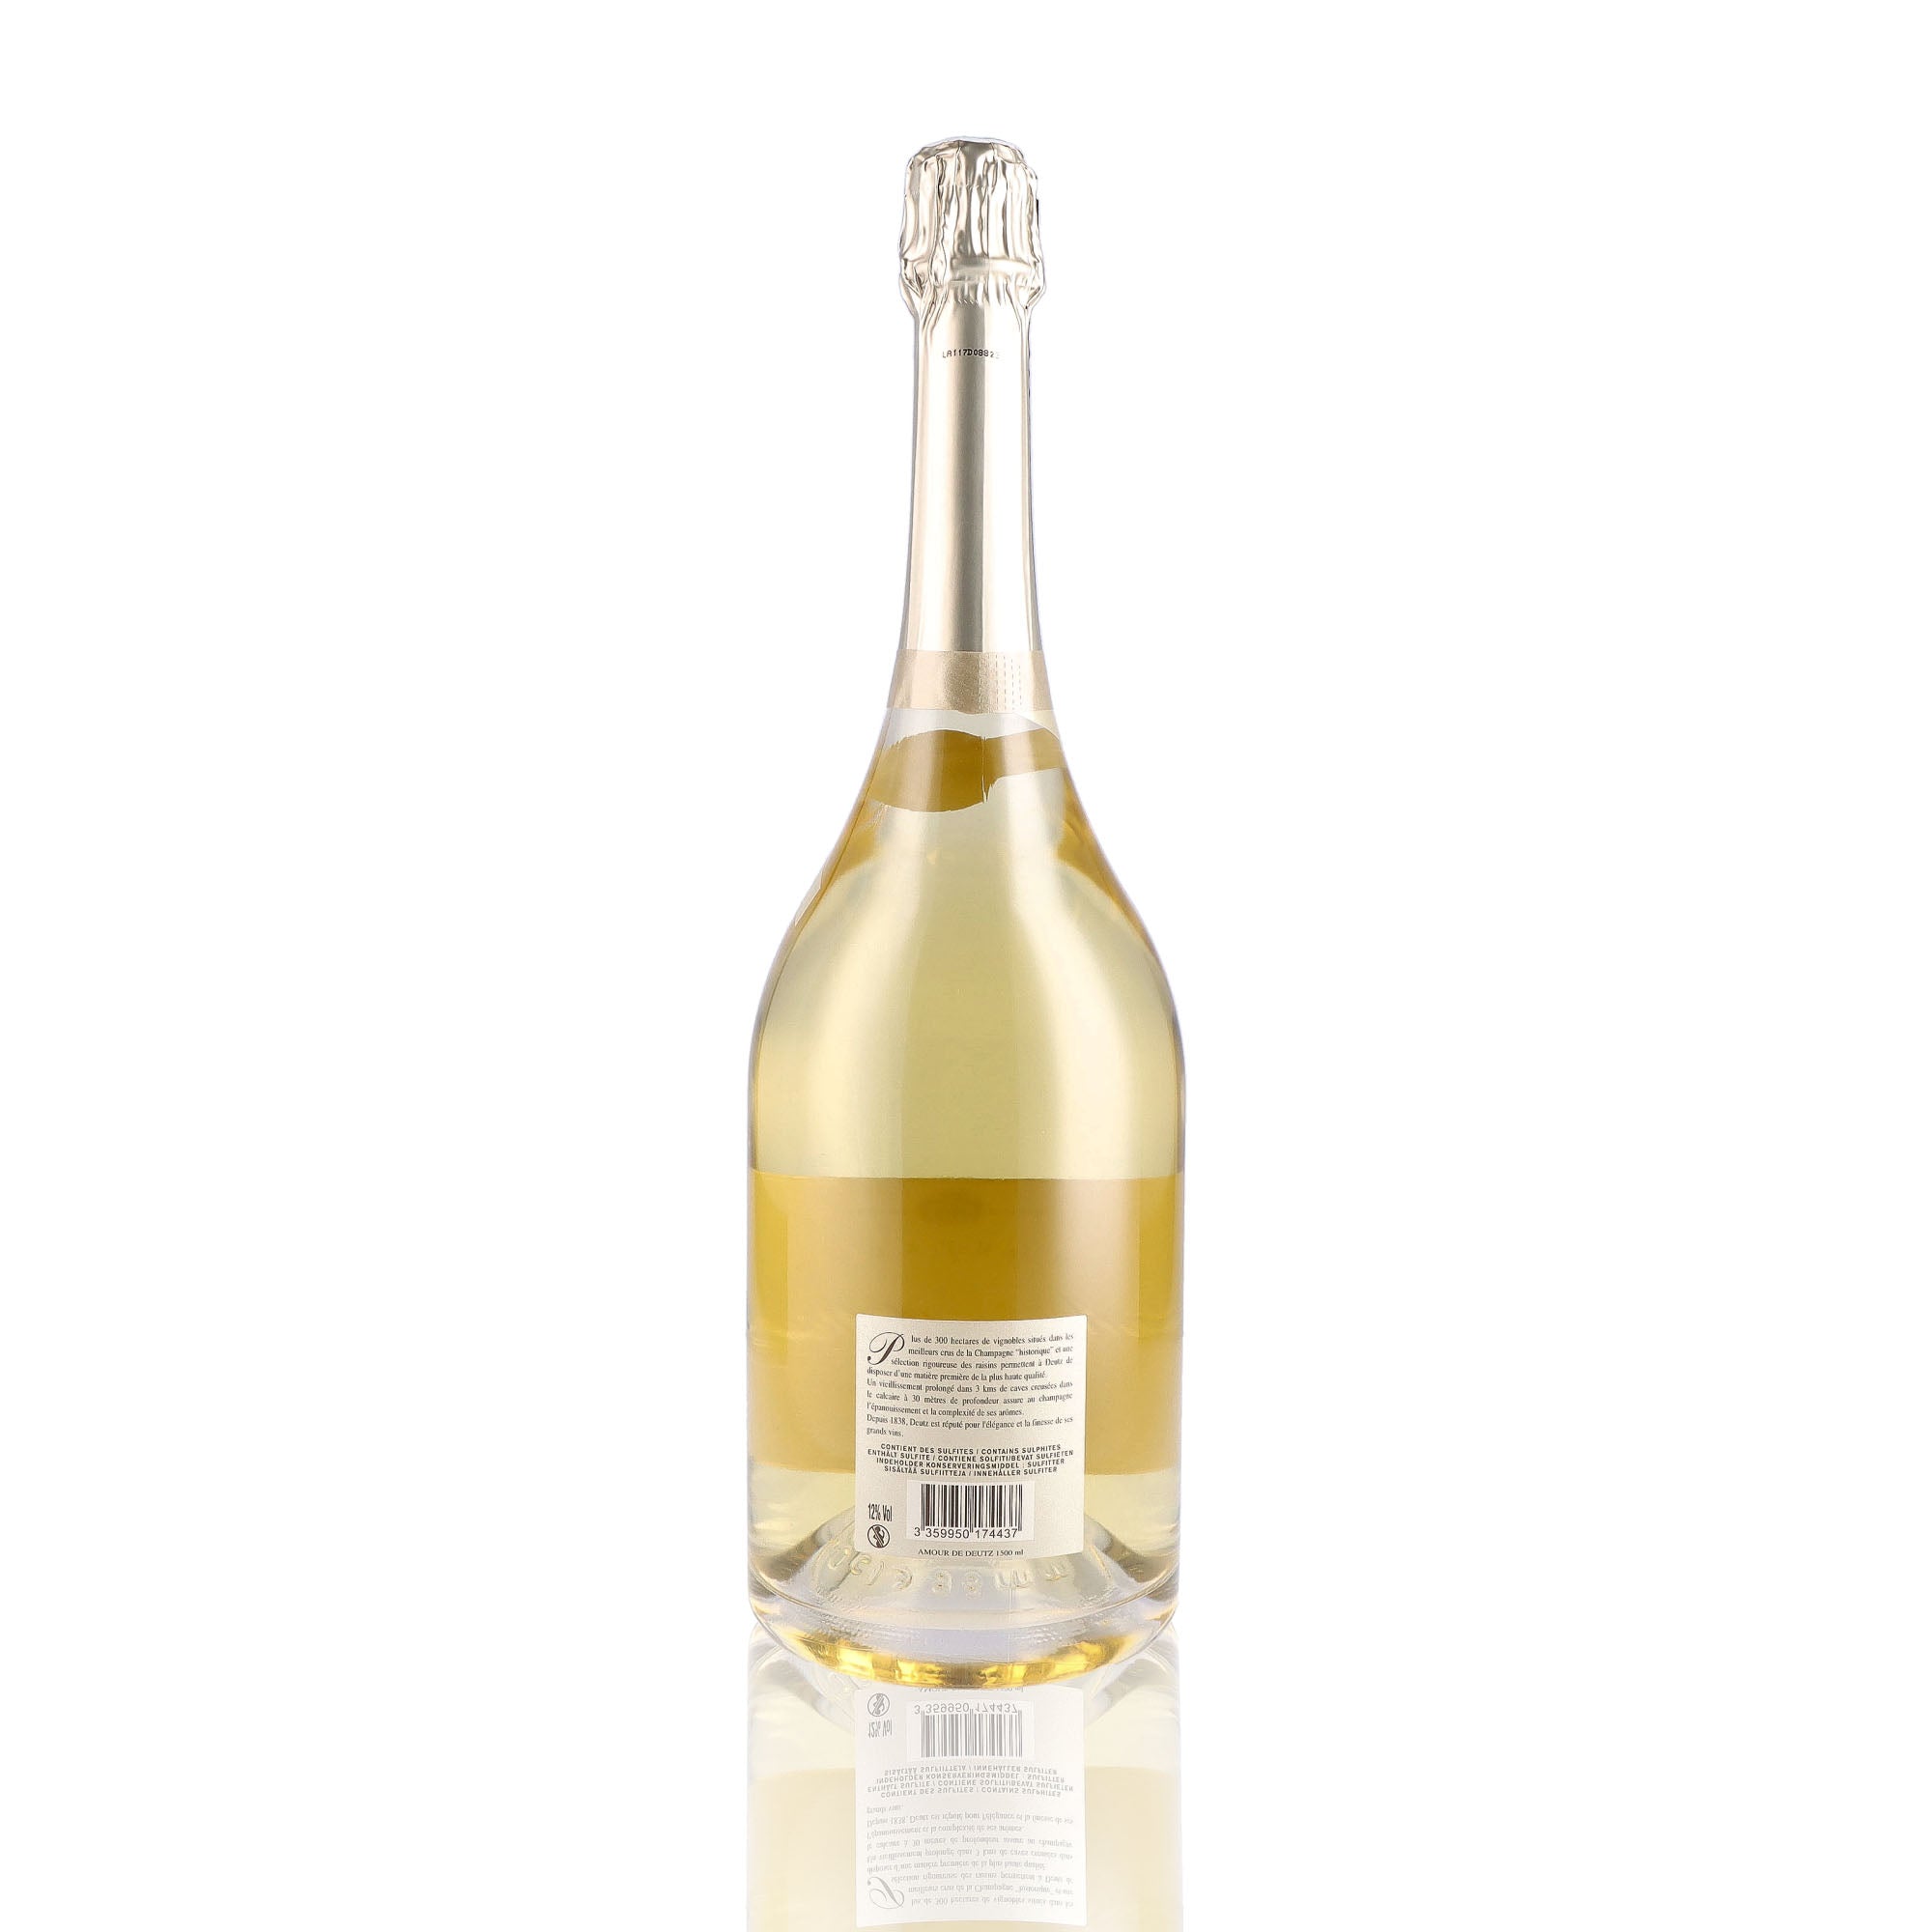 Une bouteille de champagne de la marque Deutz, de type brut, nommée amour de deutz, millésime 2013, en version magnum.